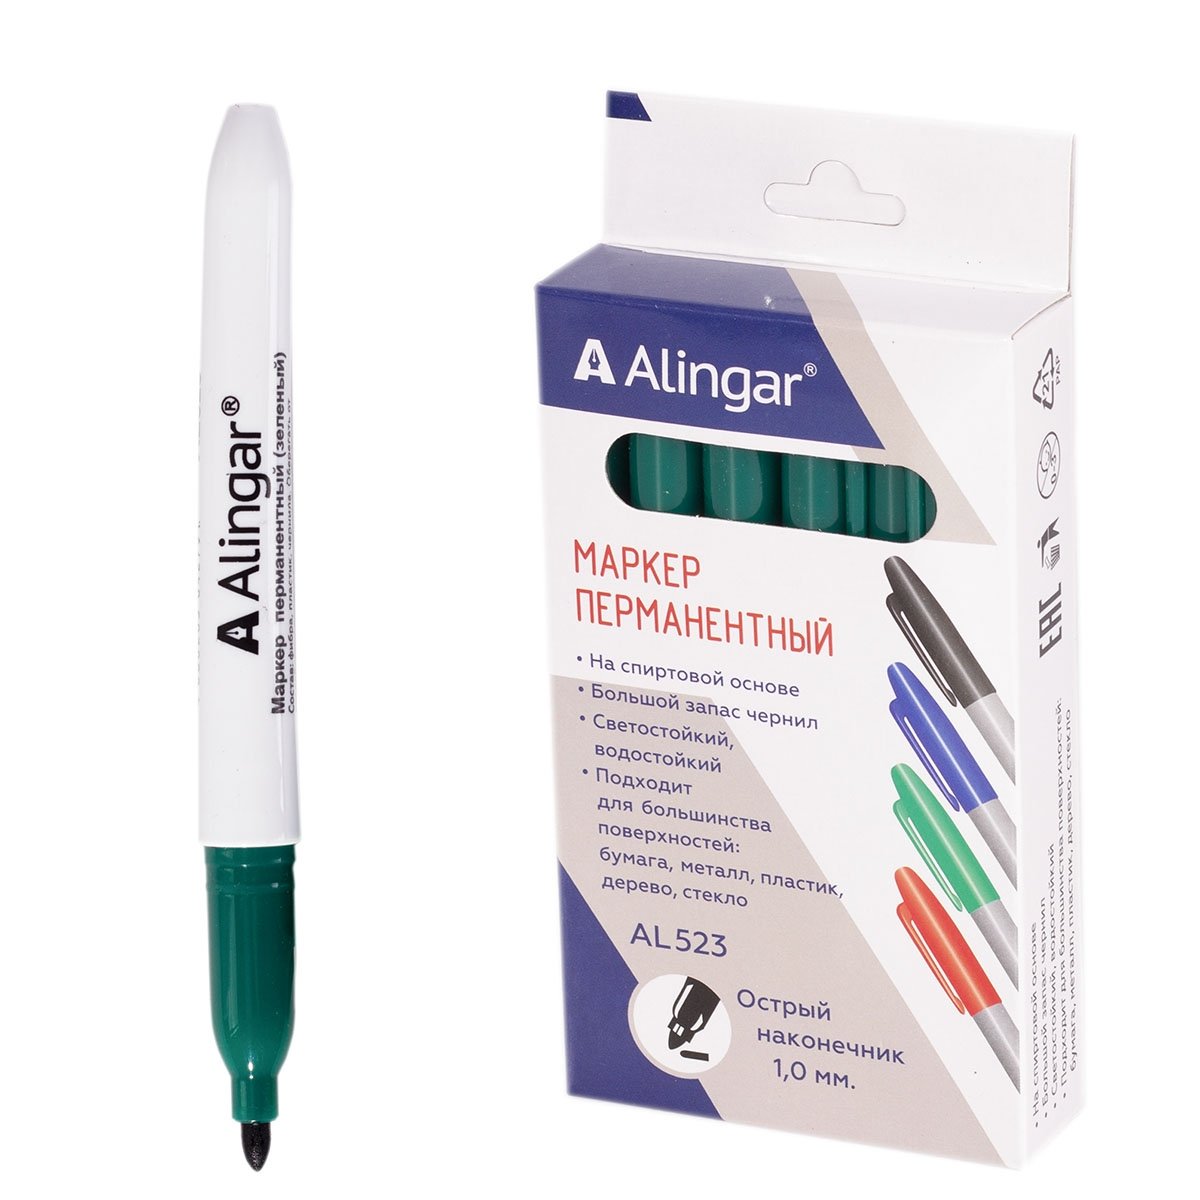 Пернаментный маркер тонкий зеленый Alingar 523